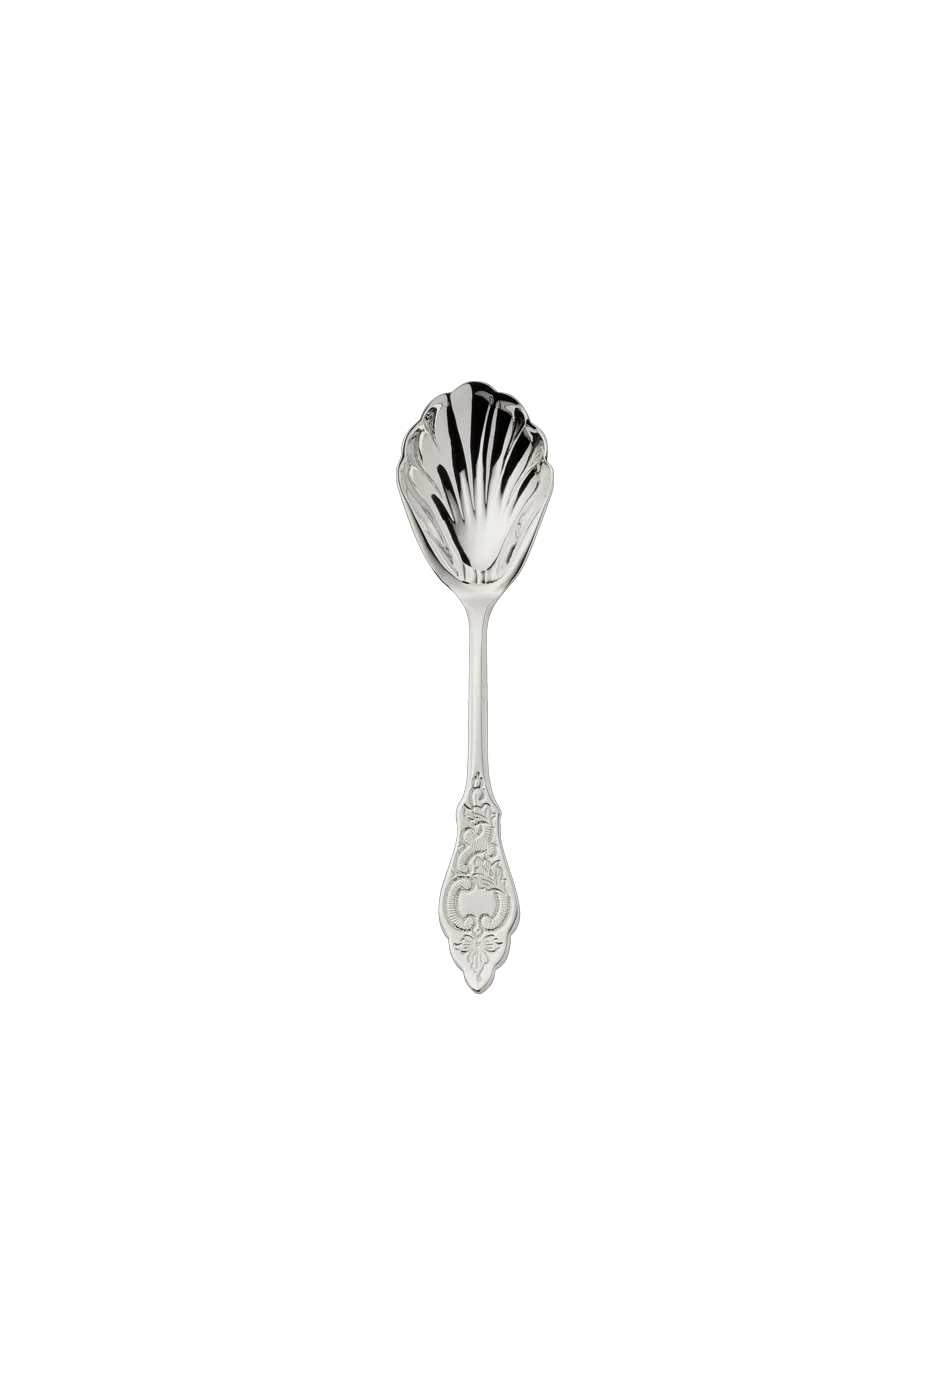 Ostfriesen Sugar Spoon (18/8 stainless steel)